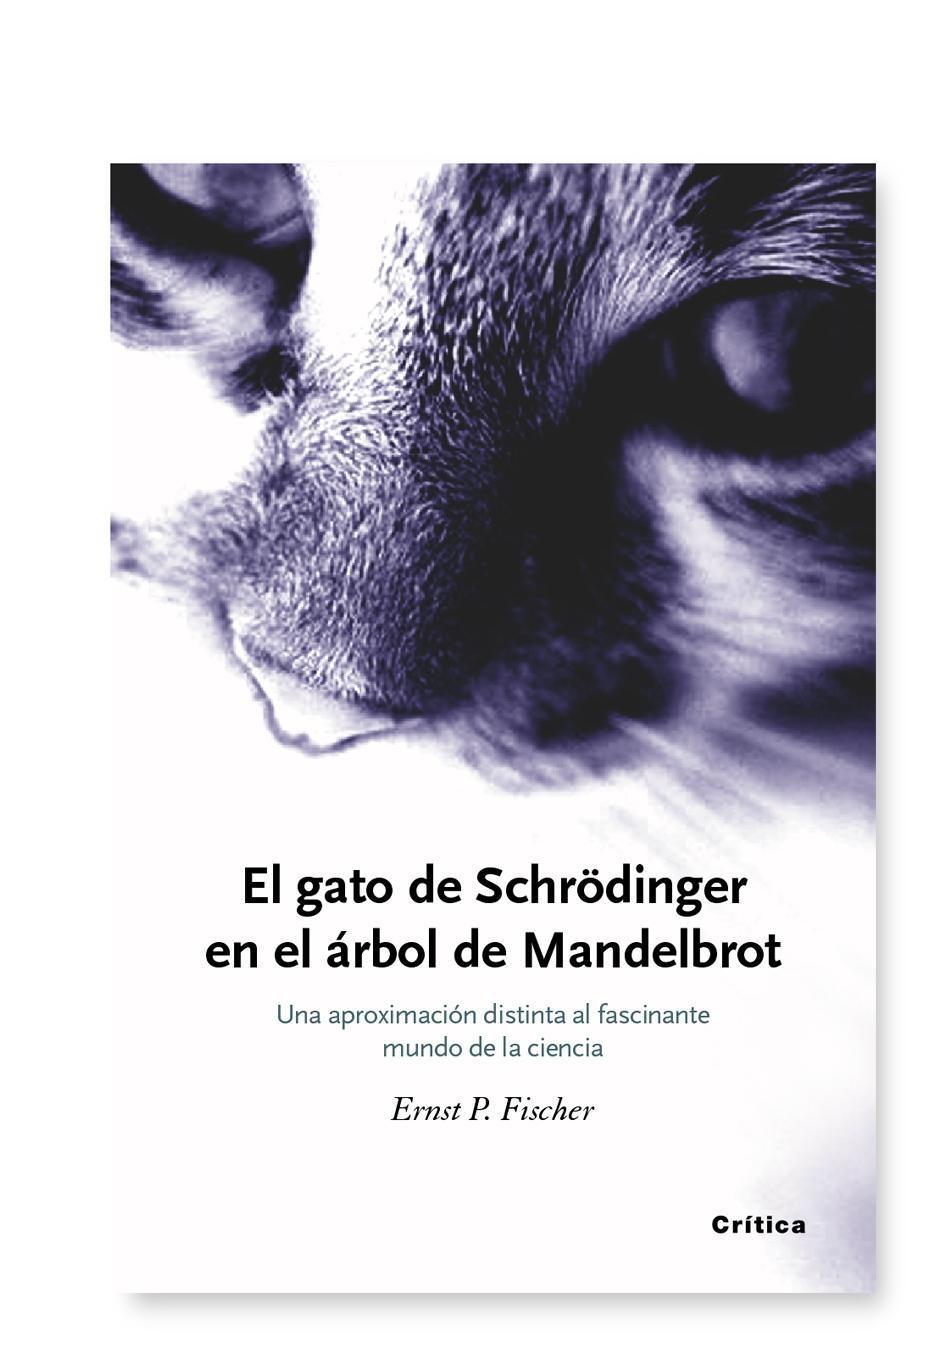 El gato de Schrödinger "Una aproximación distinta al fascinante mundo de la ciencia"